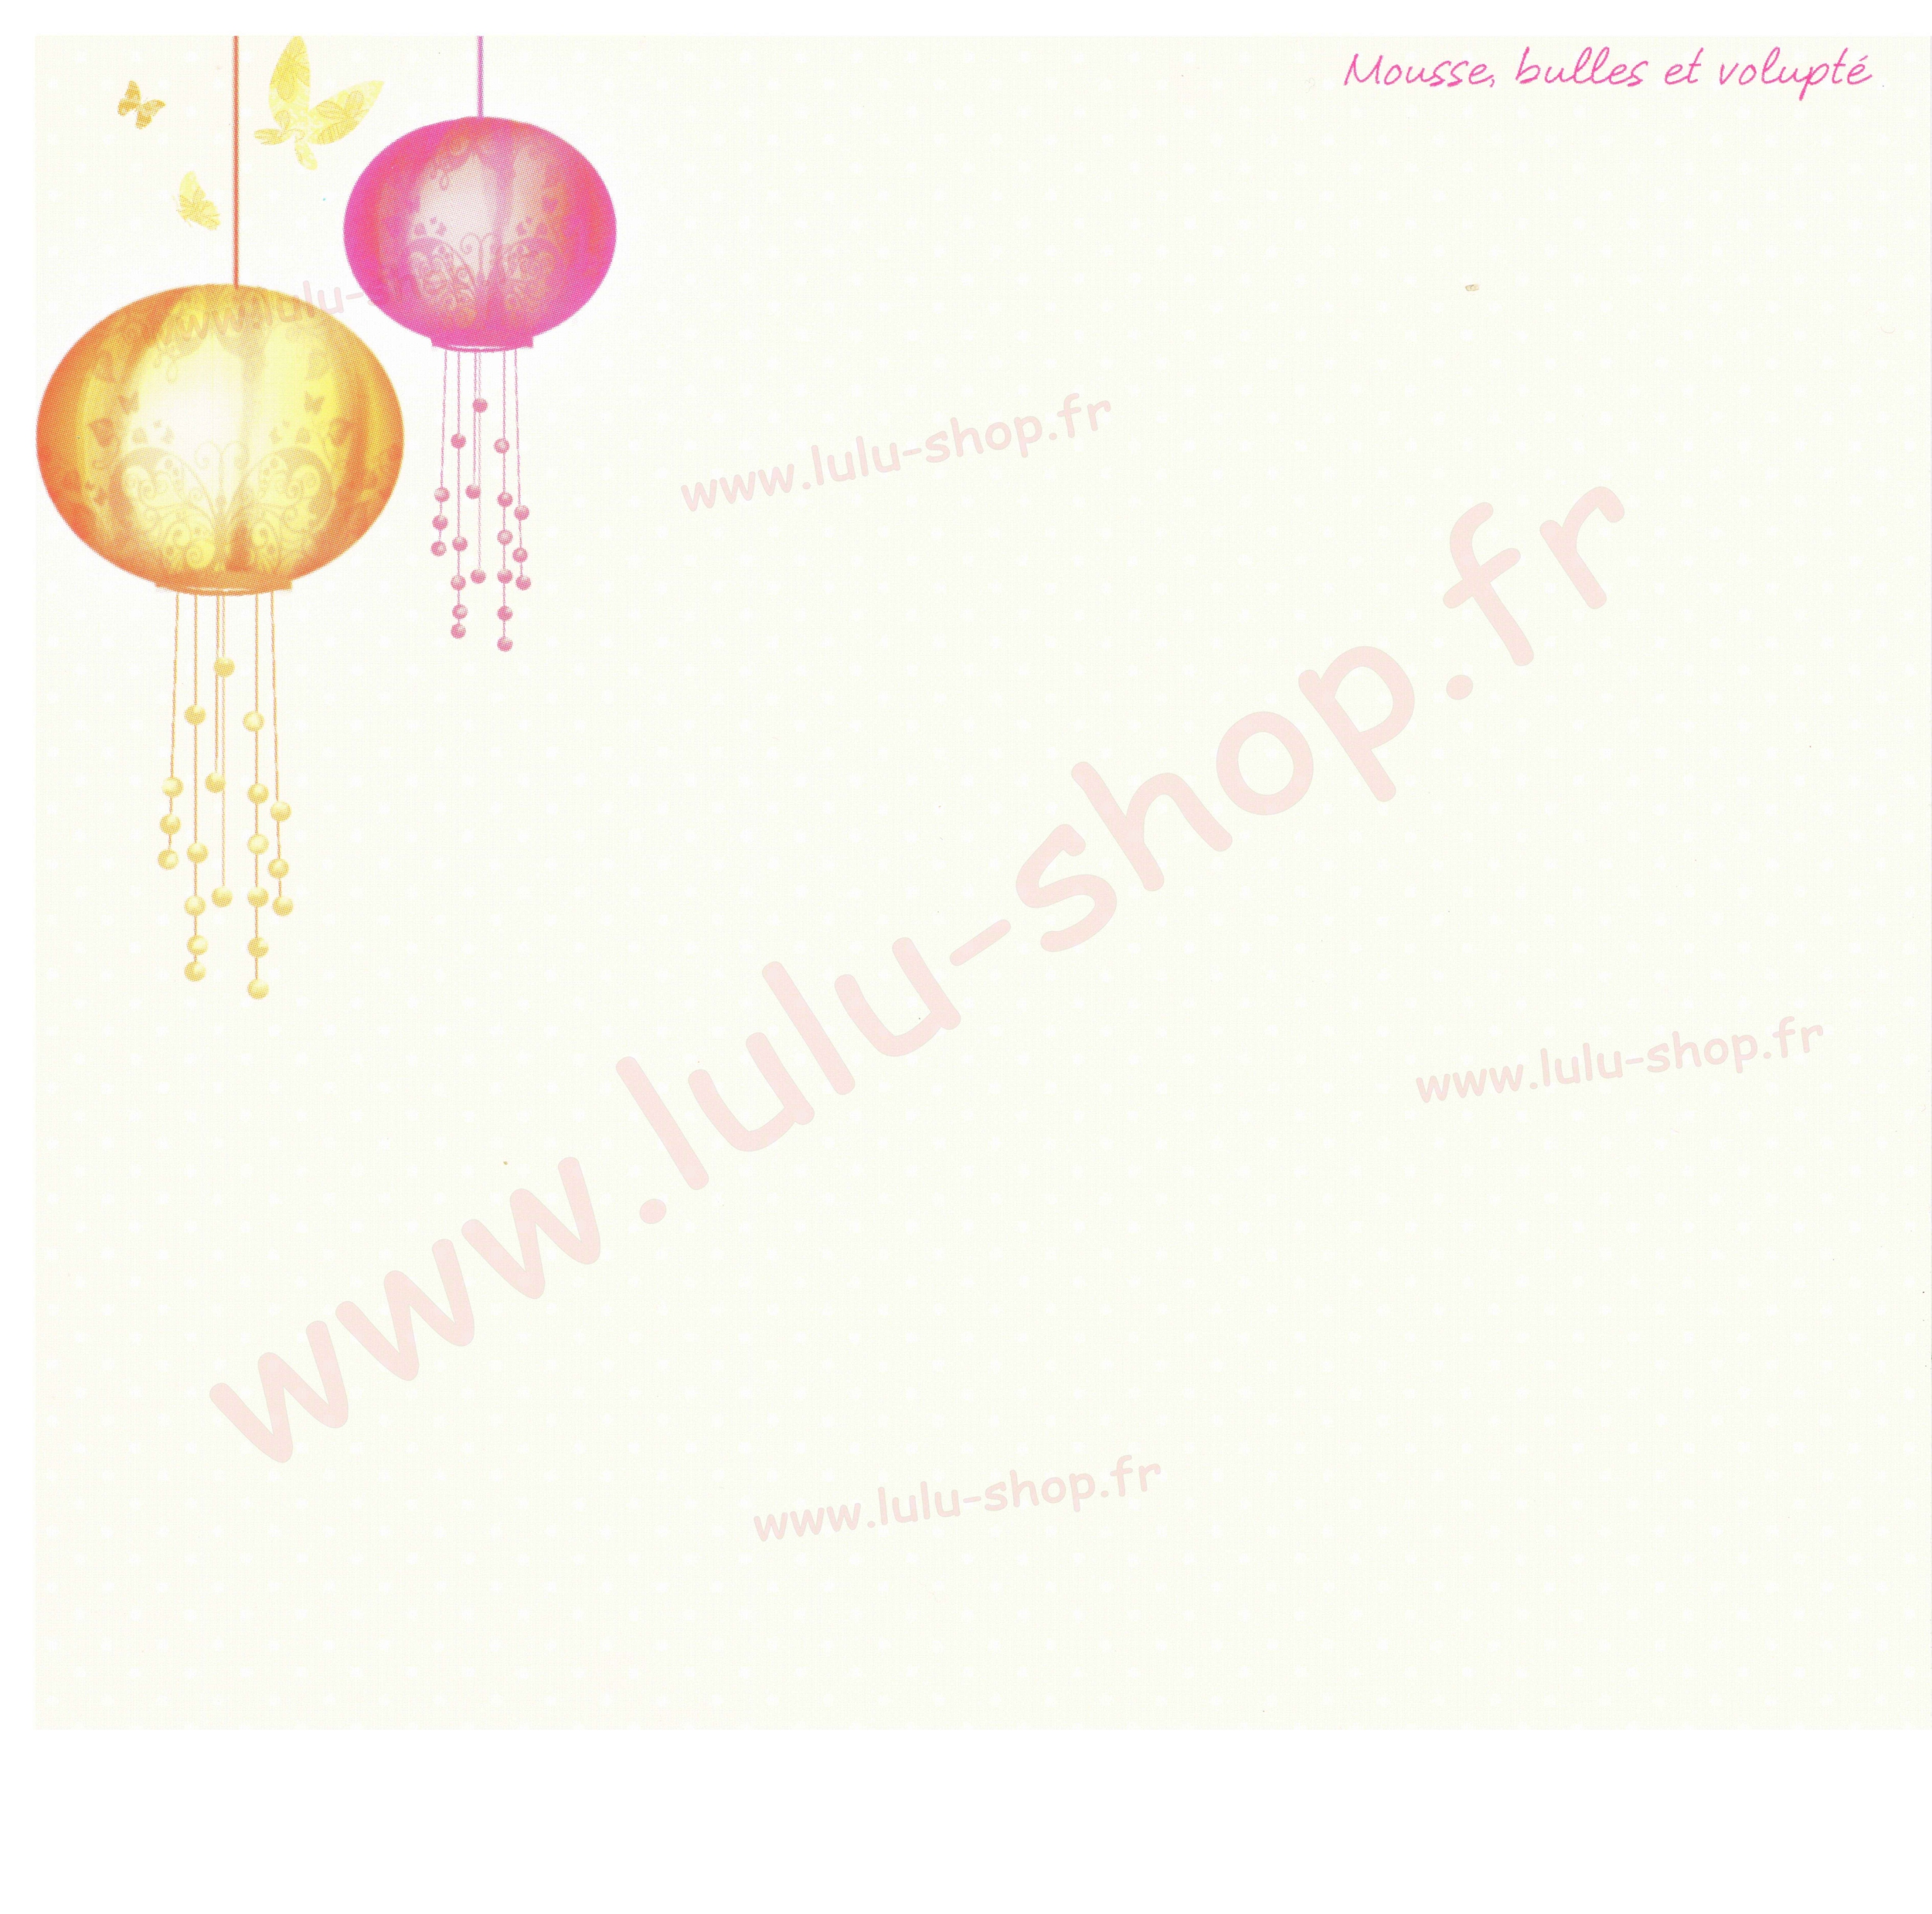 www.lulu-shop.fr Mousse Bulles Volupté